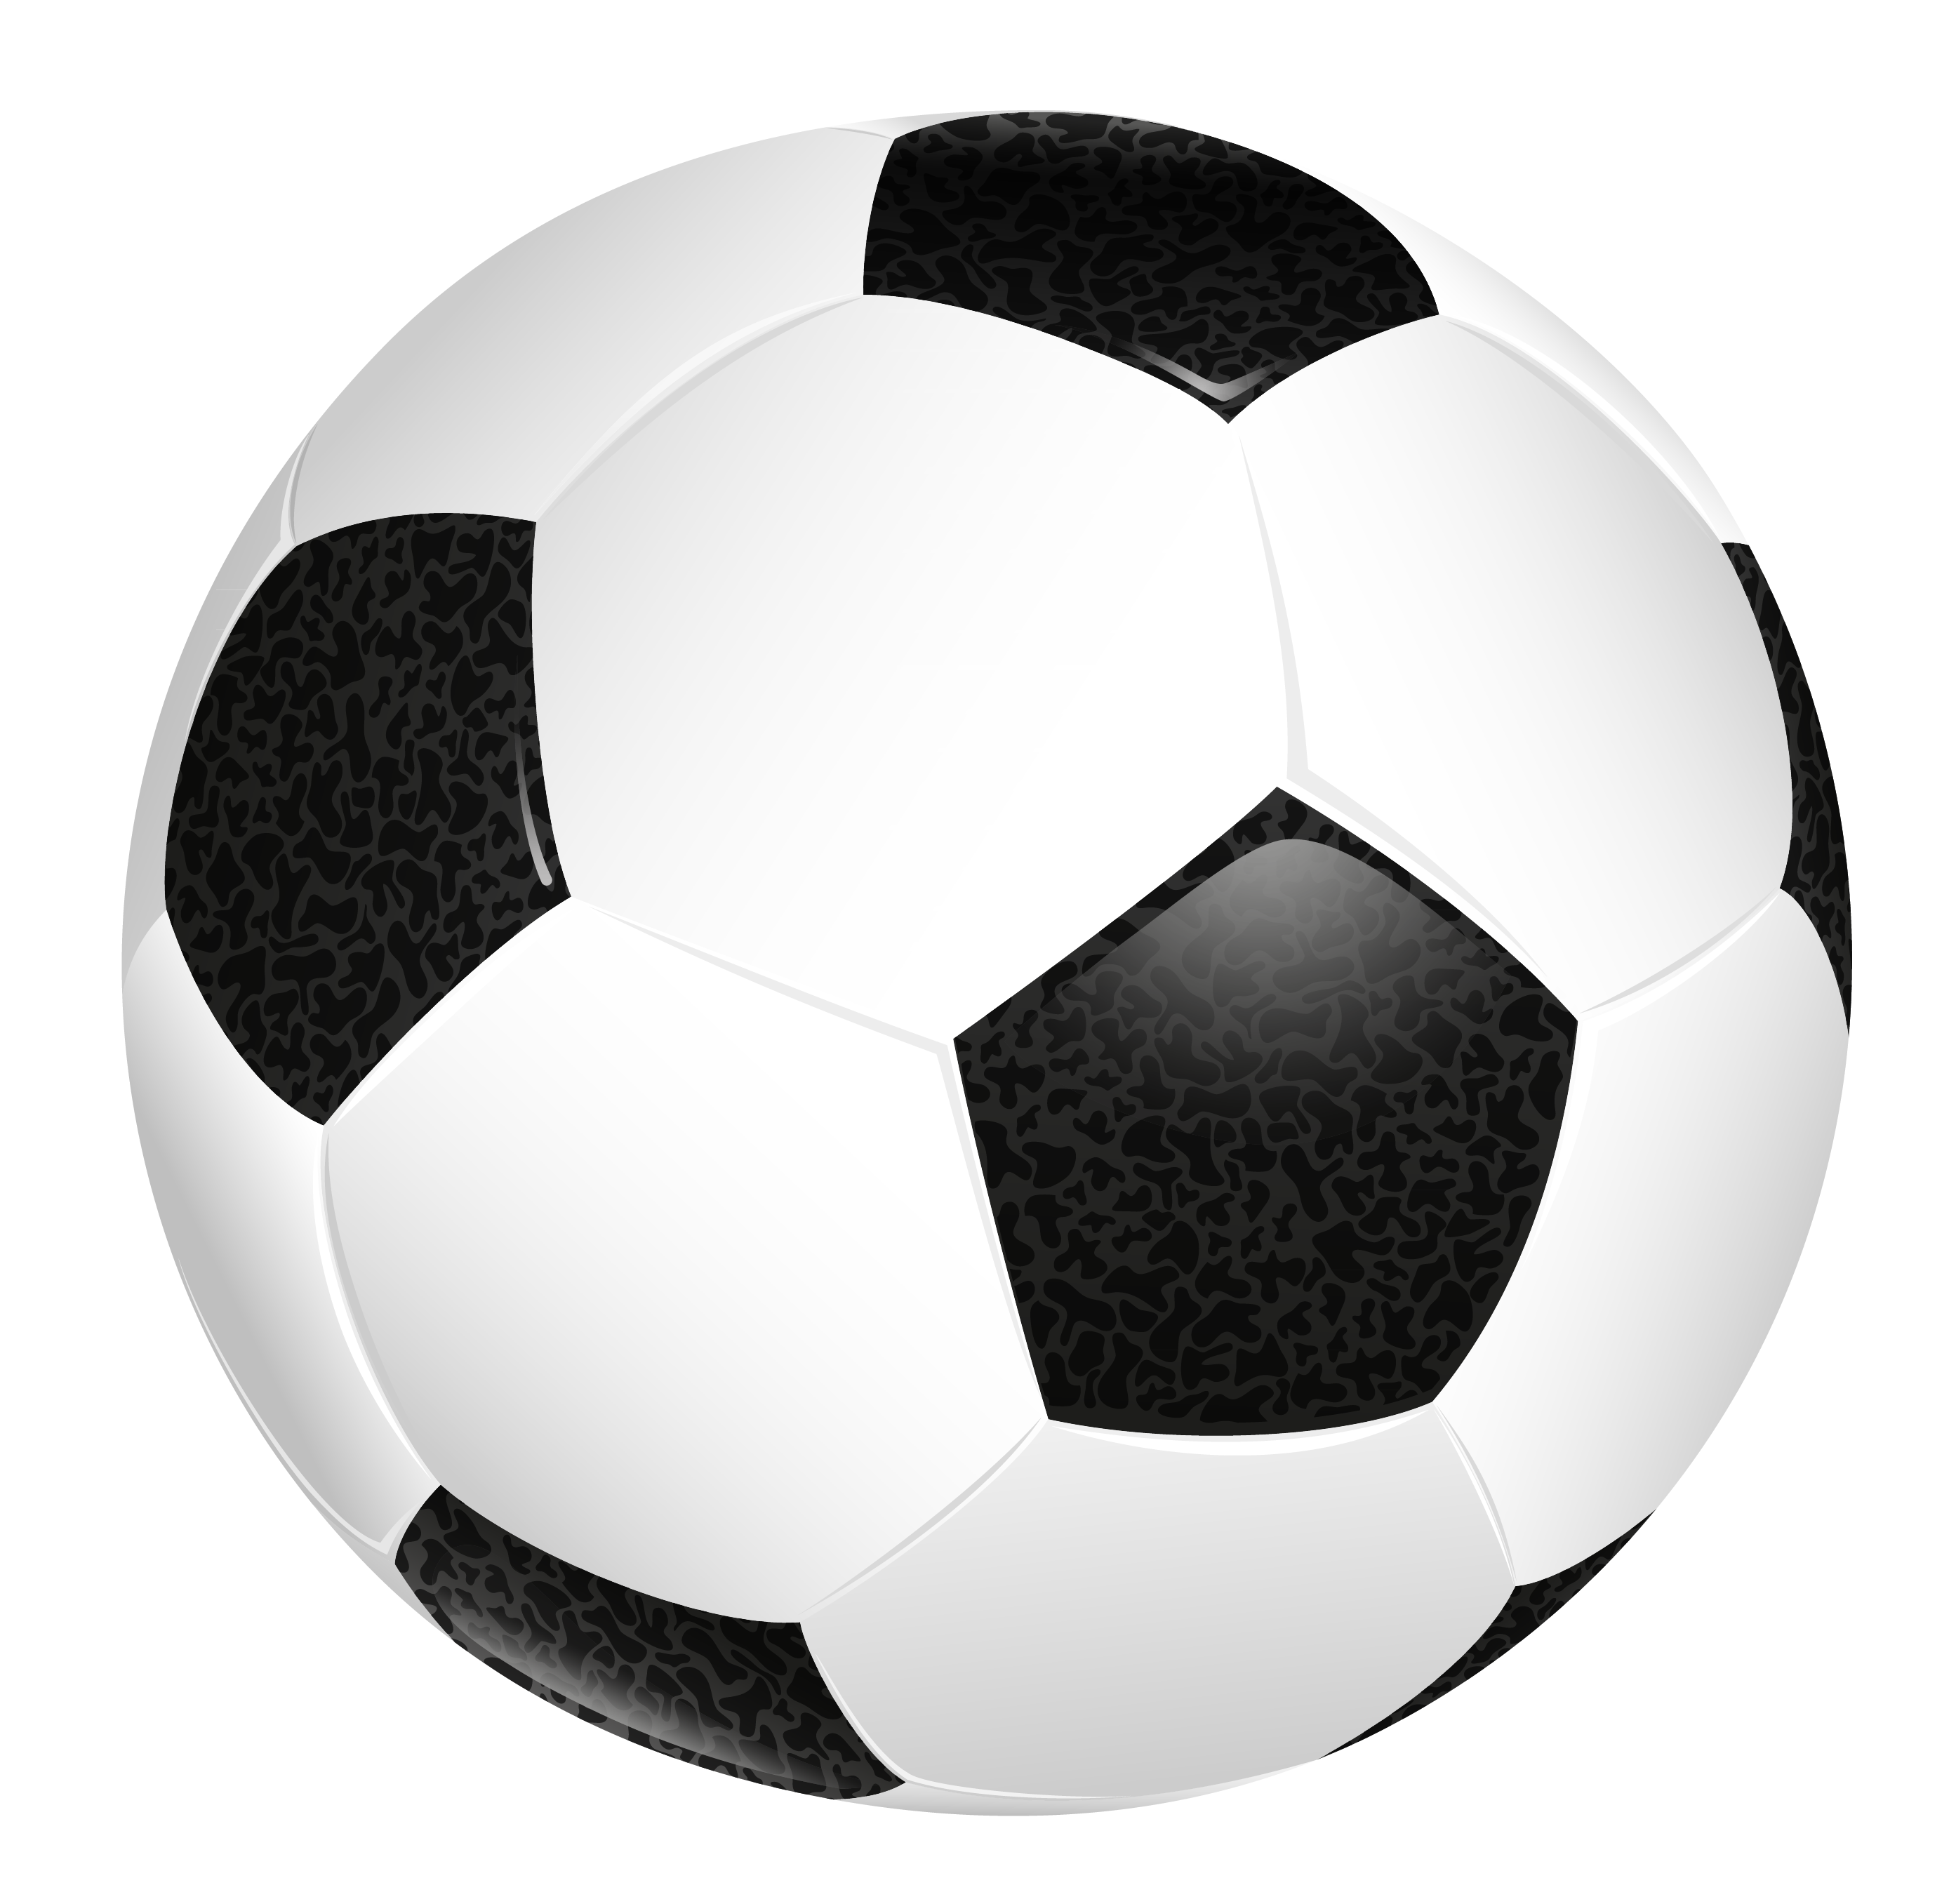 Transparent soccer ball clipart 3